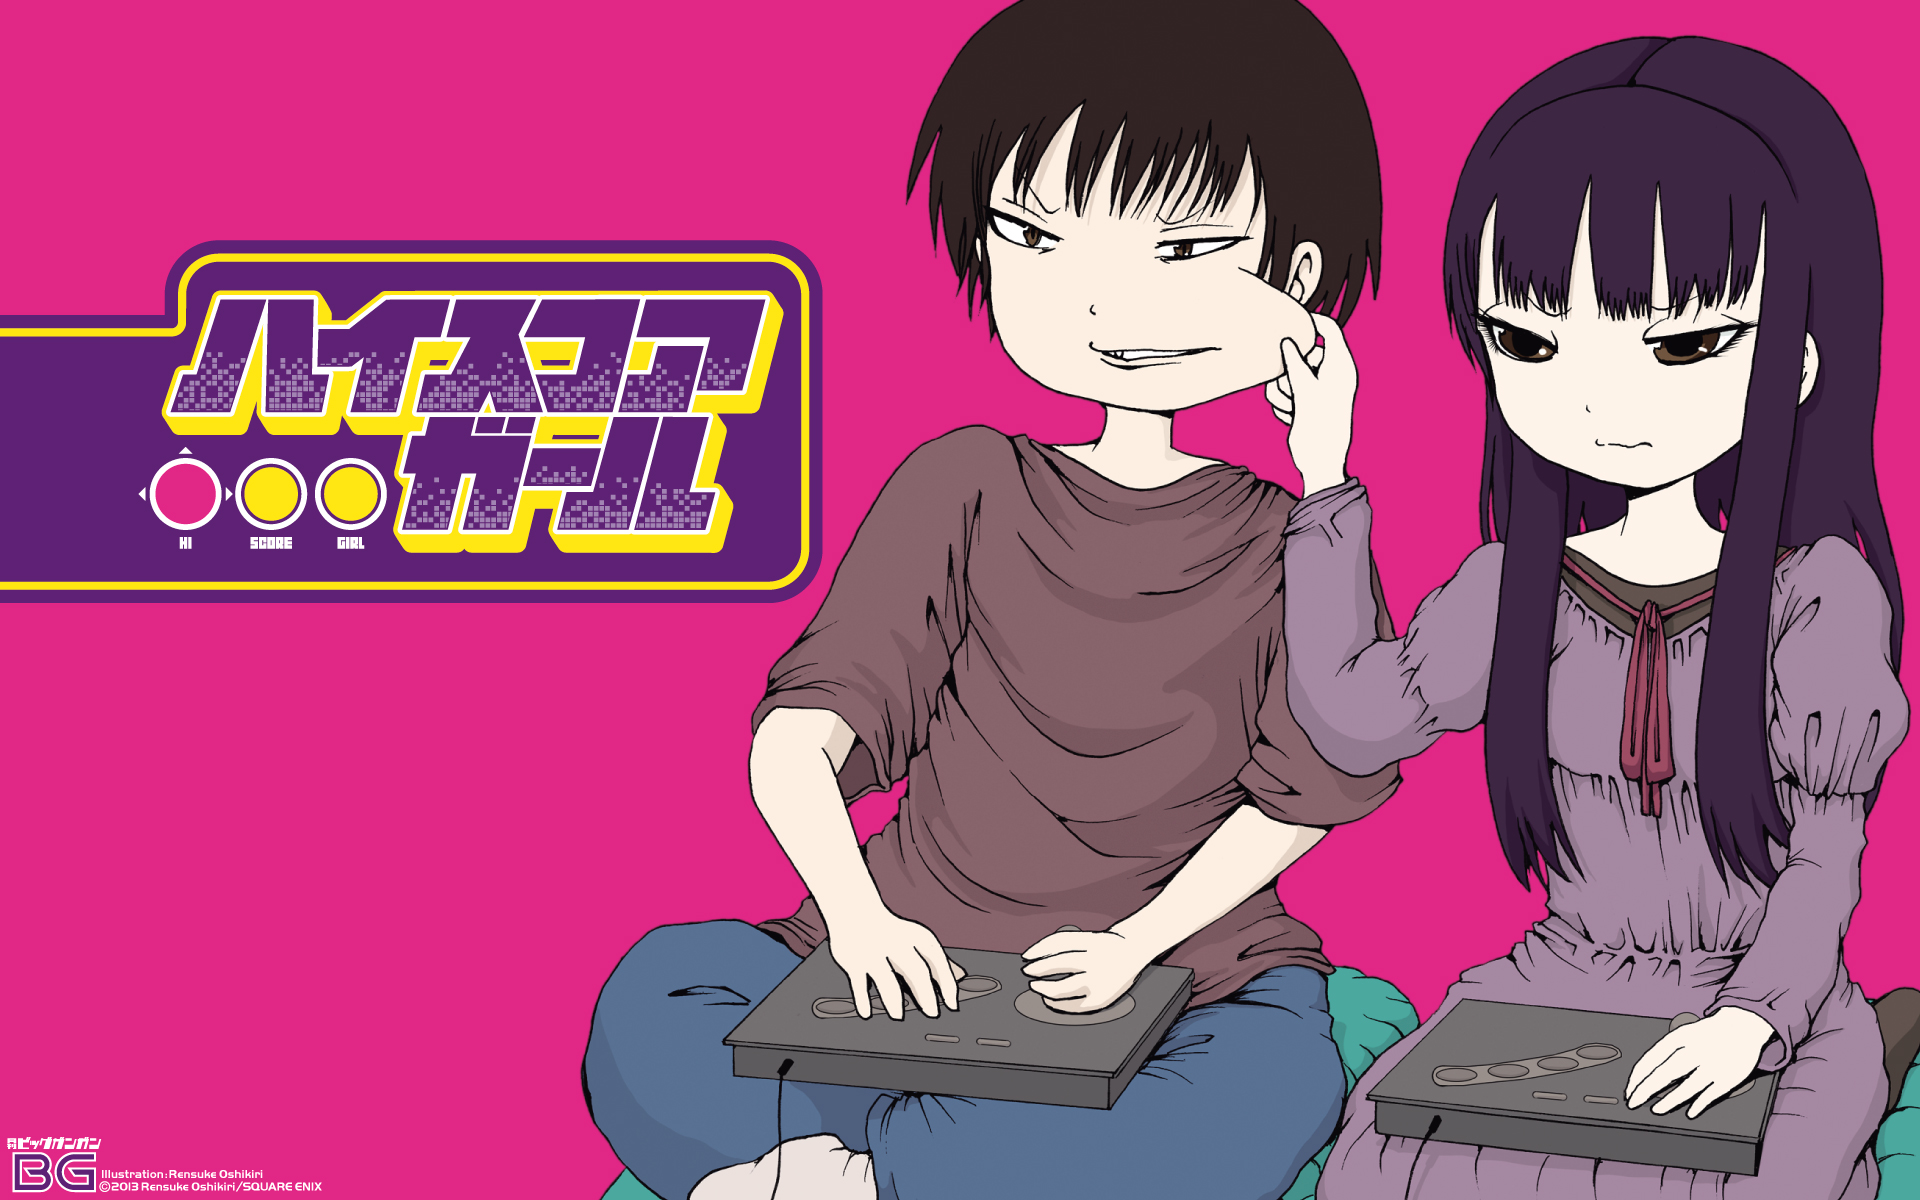 4K Wallpaper for PC: Anime AKIRA Logo